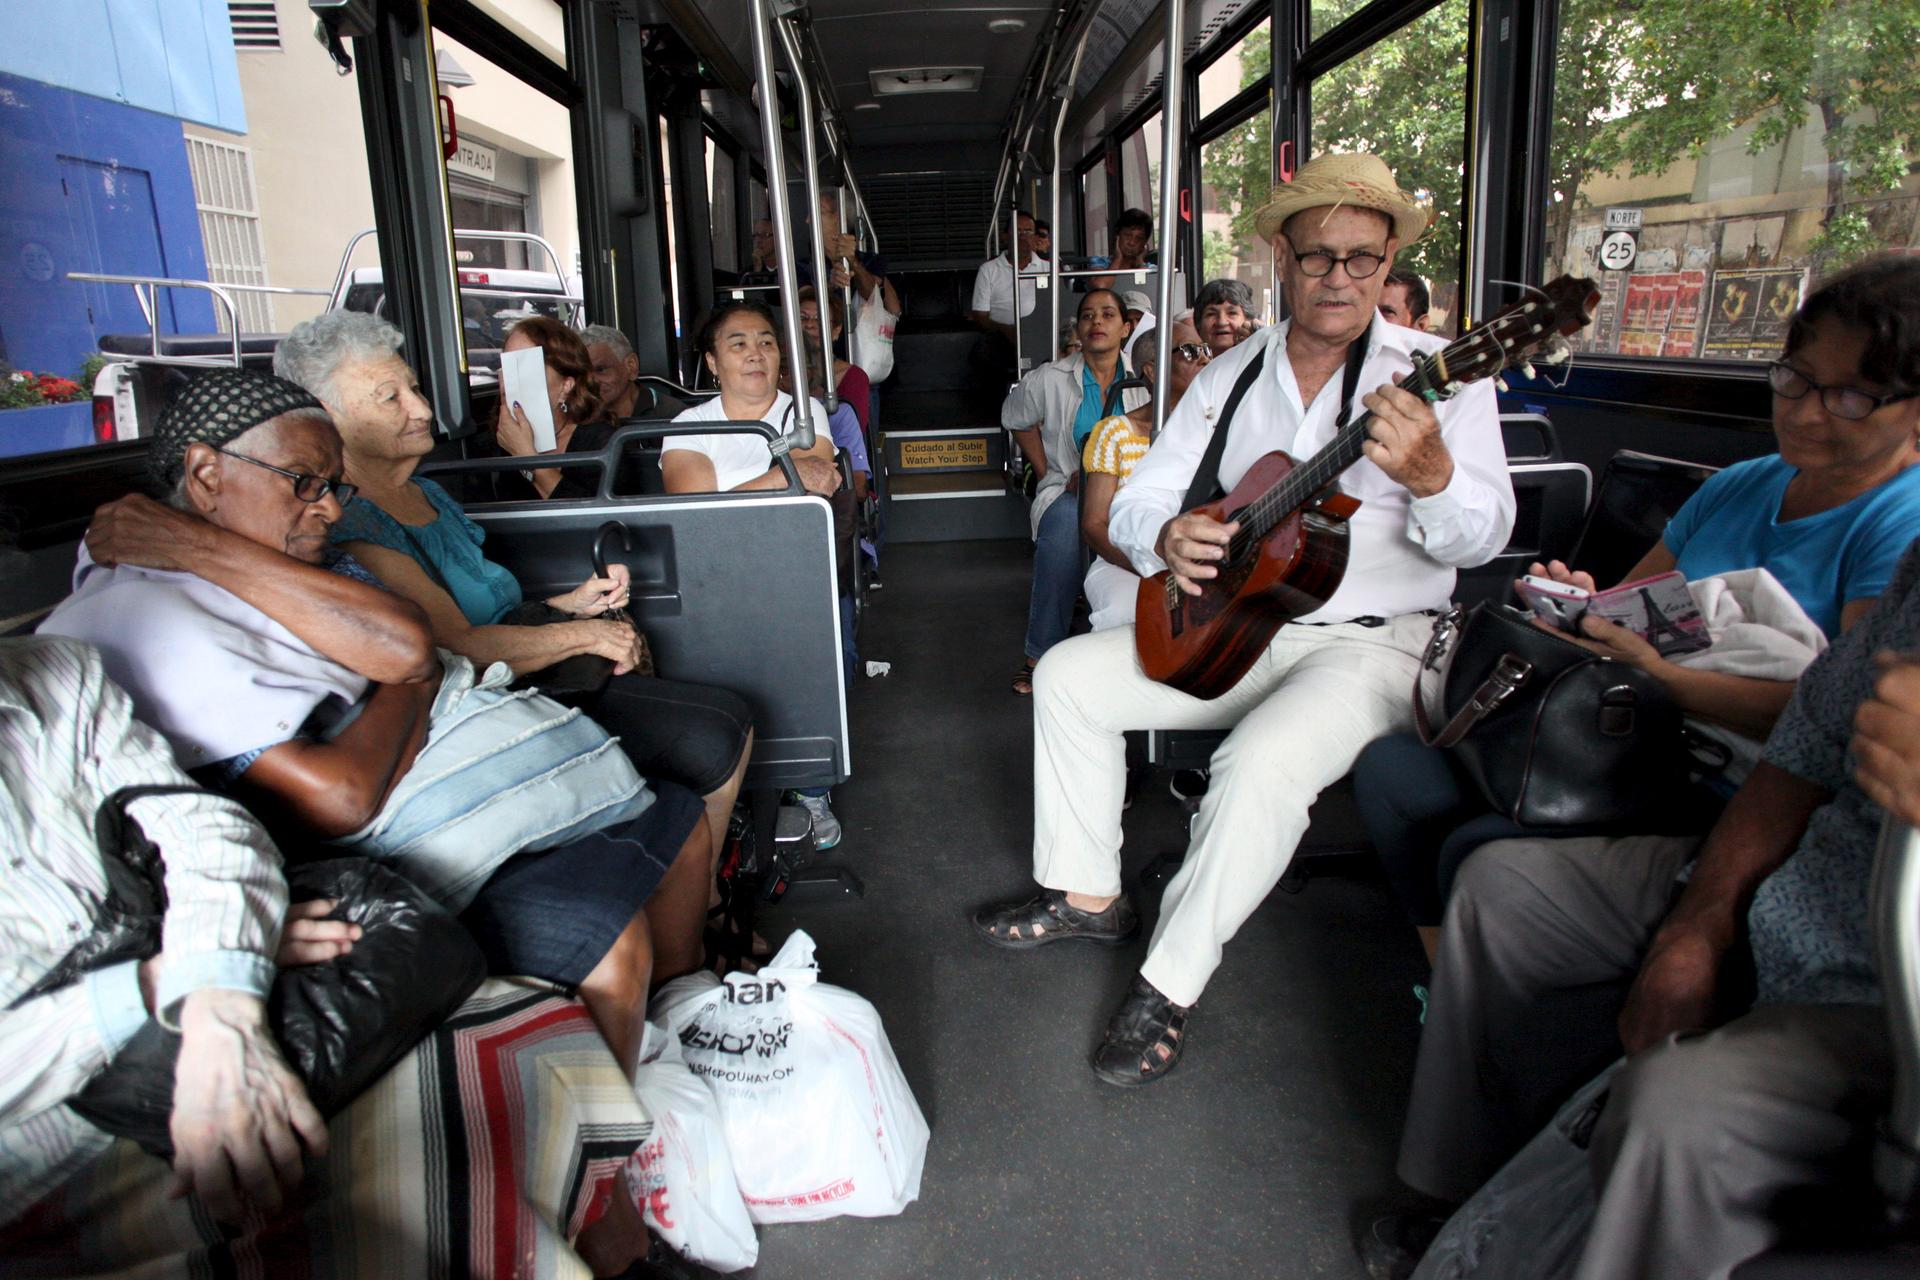 Jorge Luis Jimenez plays the guitar for passengers on a public bus in San Juan, Puerto Rico, on Dec. 2, 2015